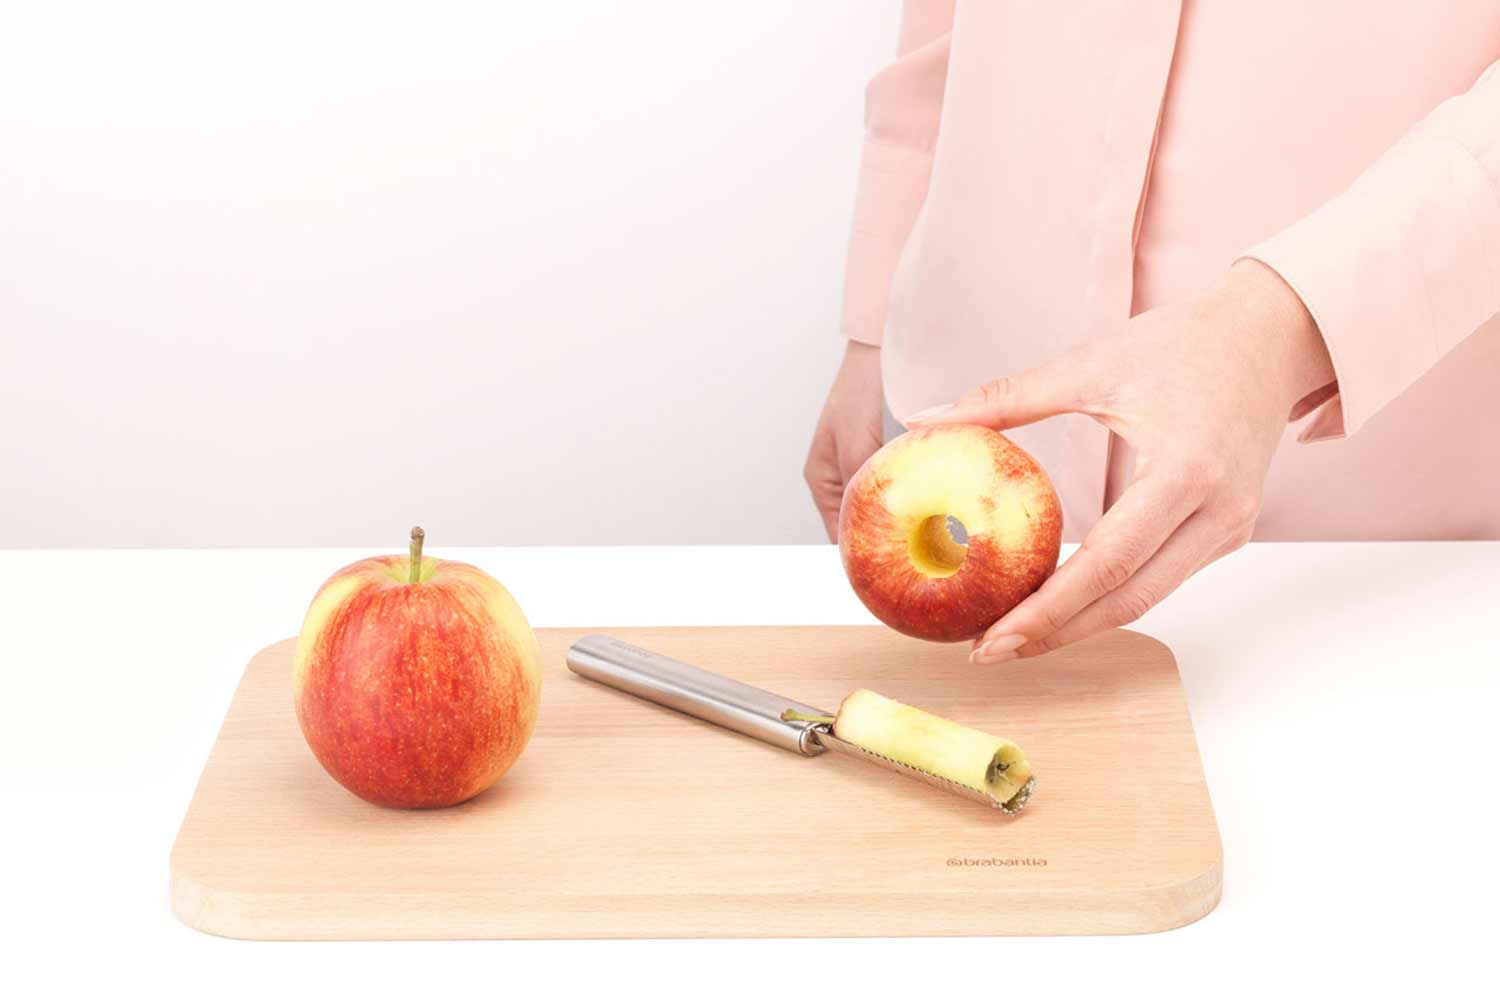 Перед обработкой из яблок иногда вырезают сердцевину. Brabantia нож для яблок. Удалитель сердцевины у яблок. Brabantia profile line 250187. Нож для удаления сердцевины яблок.